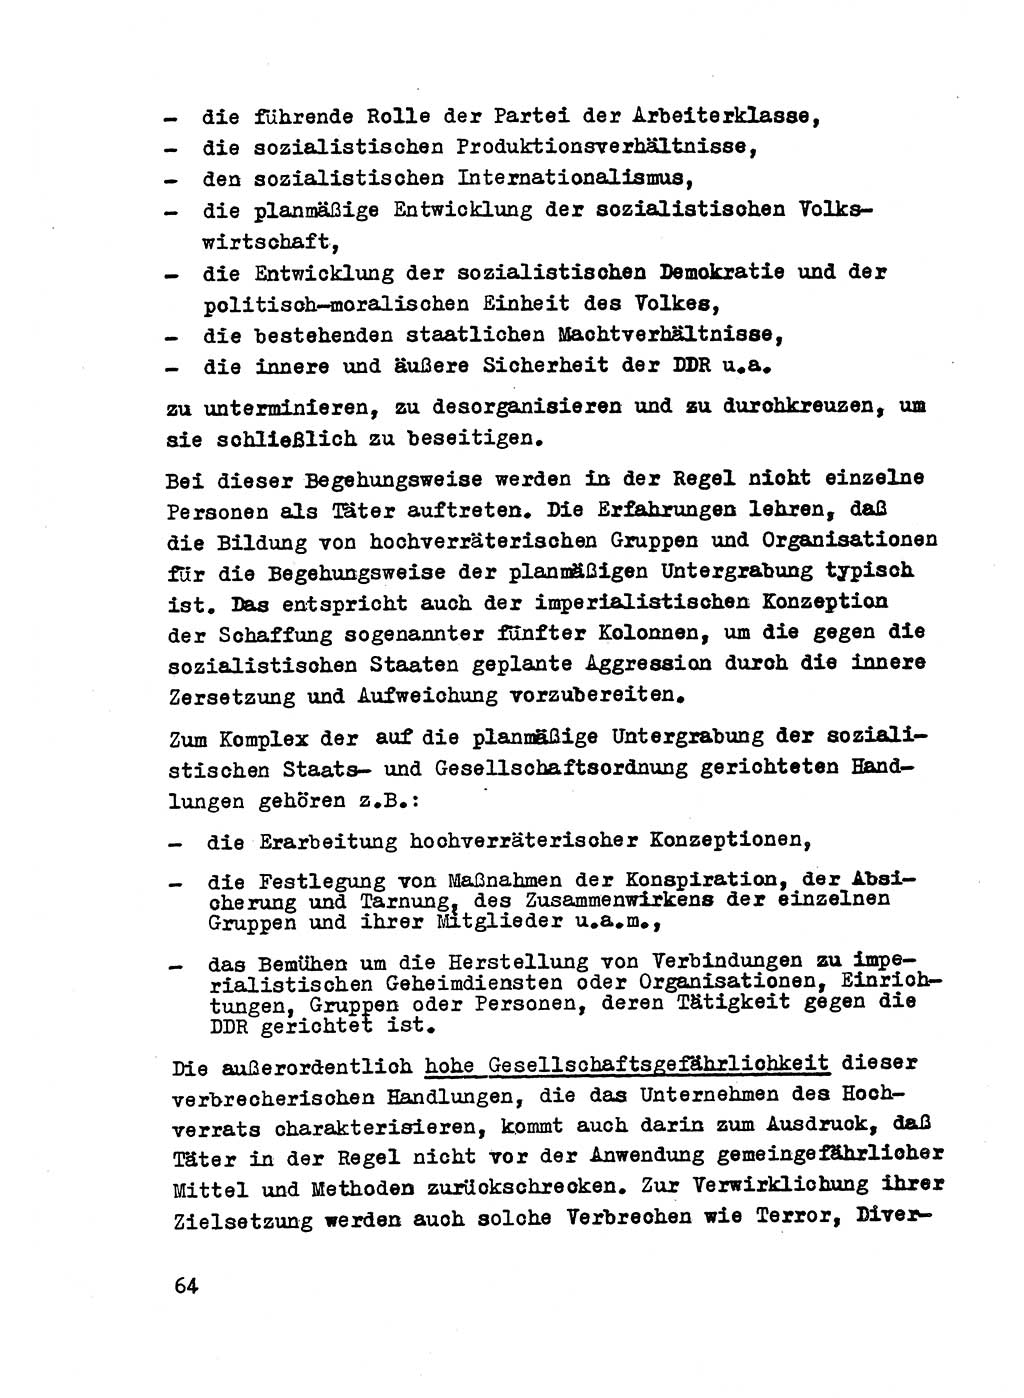 Strafrecht der DDR (Deutsche Demokratische Republik), Besonderer Teil, Lehrmaterial, Heft 2 1969, Seite 64 (Strafr. DDR BT Lehrmat. H. 2 1969, S. 64)